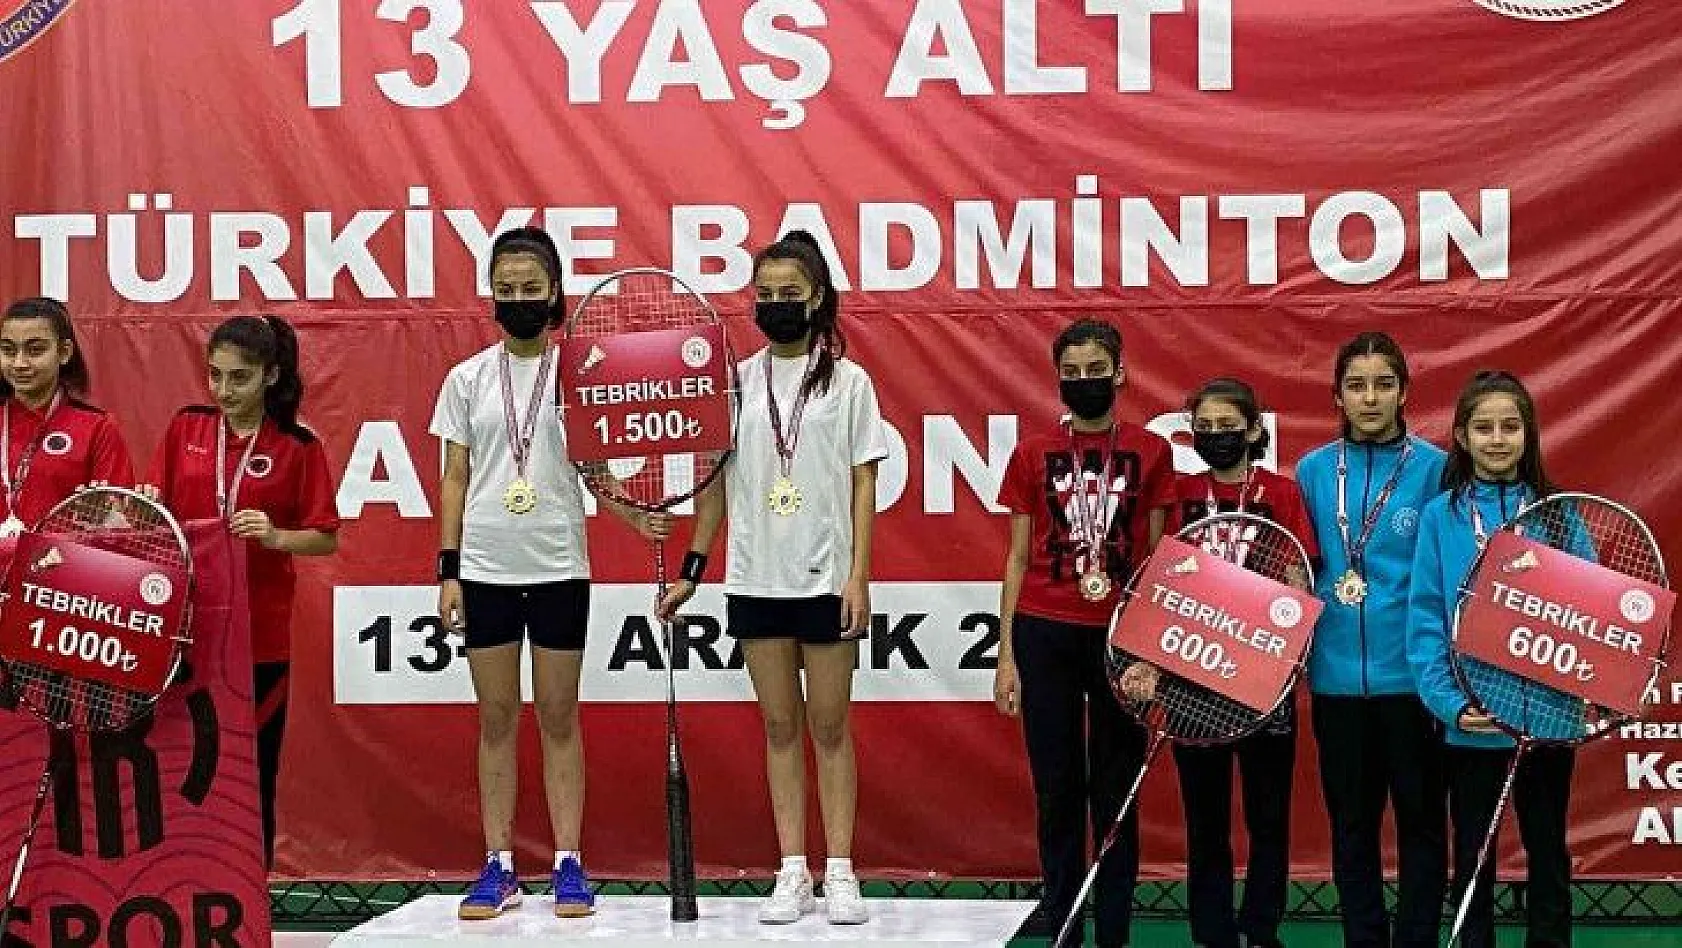 Kayserili sporcular Badminton'da Türkiye üçüncüsü